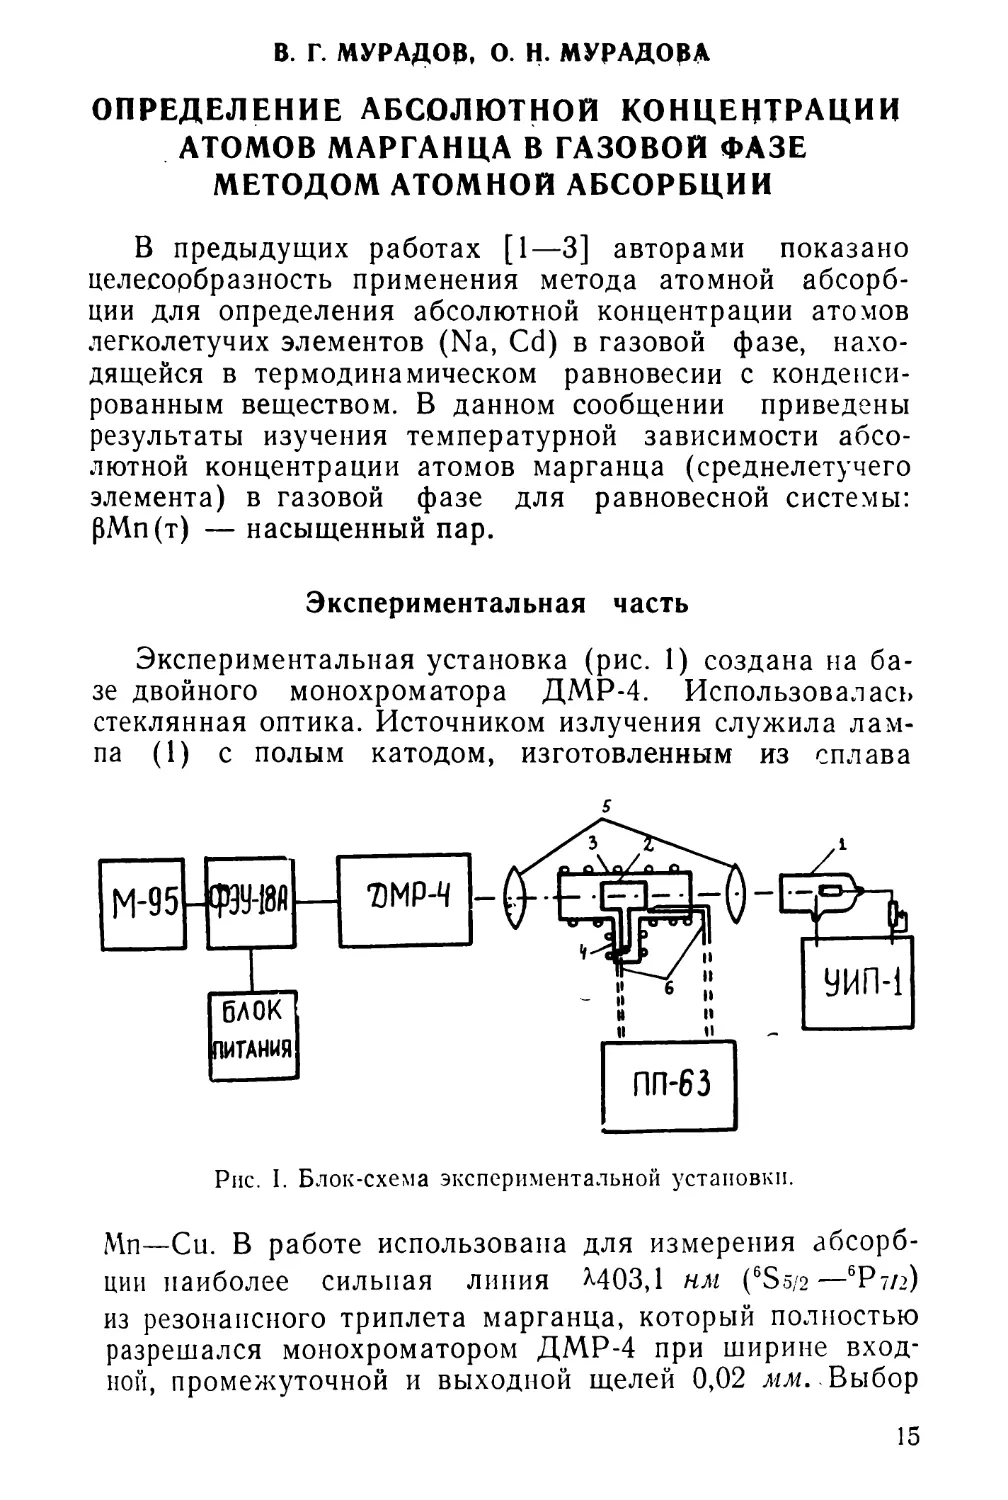 В. Г. Мурадов, О. Н. Мурадова. Определение абсолютной концентрации атомов марганца в газовой фазе методом атомной абсорбции